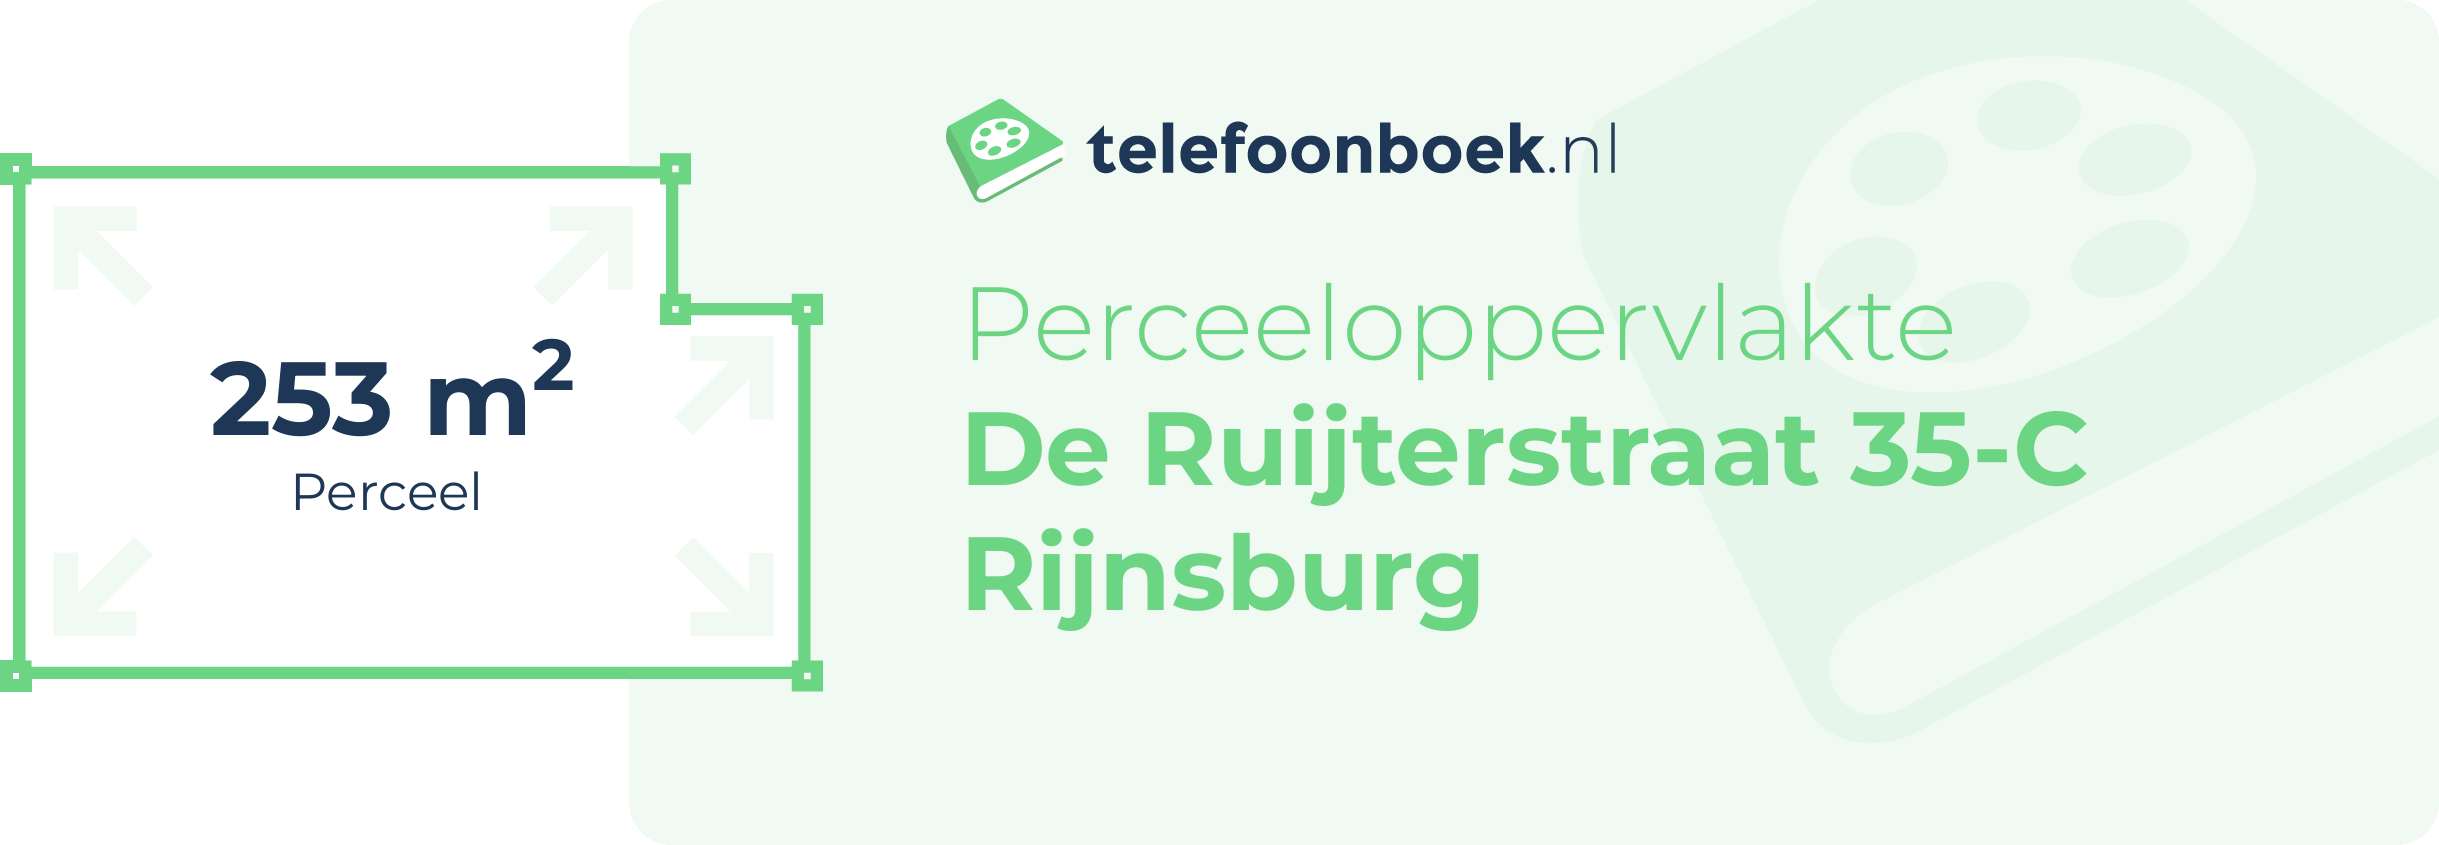 Perceeloppervlakte De Ruijterstraat 35-C Rijnsburg